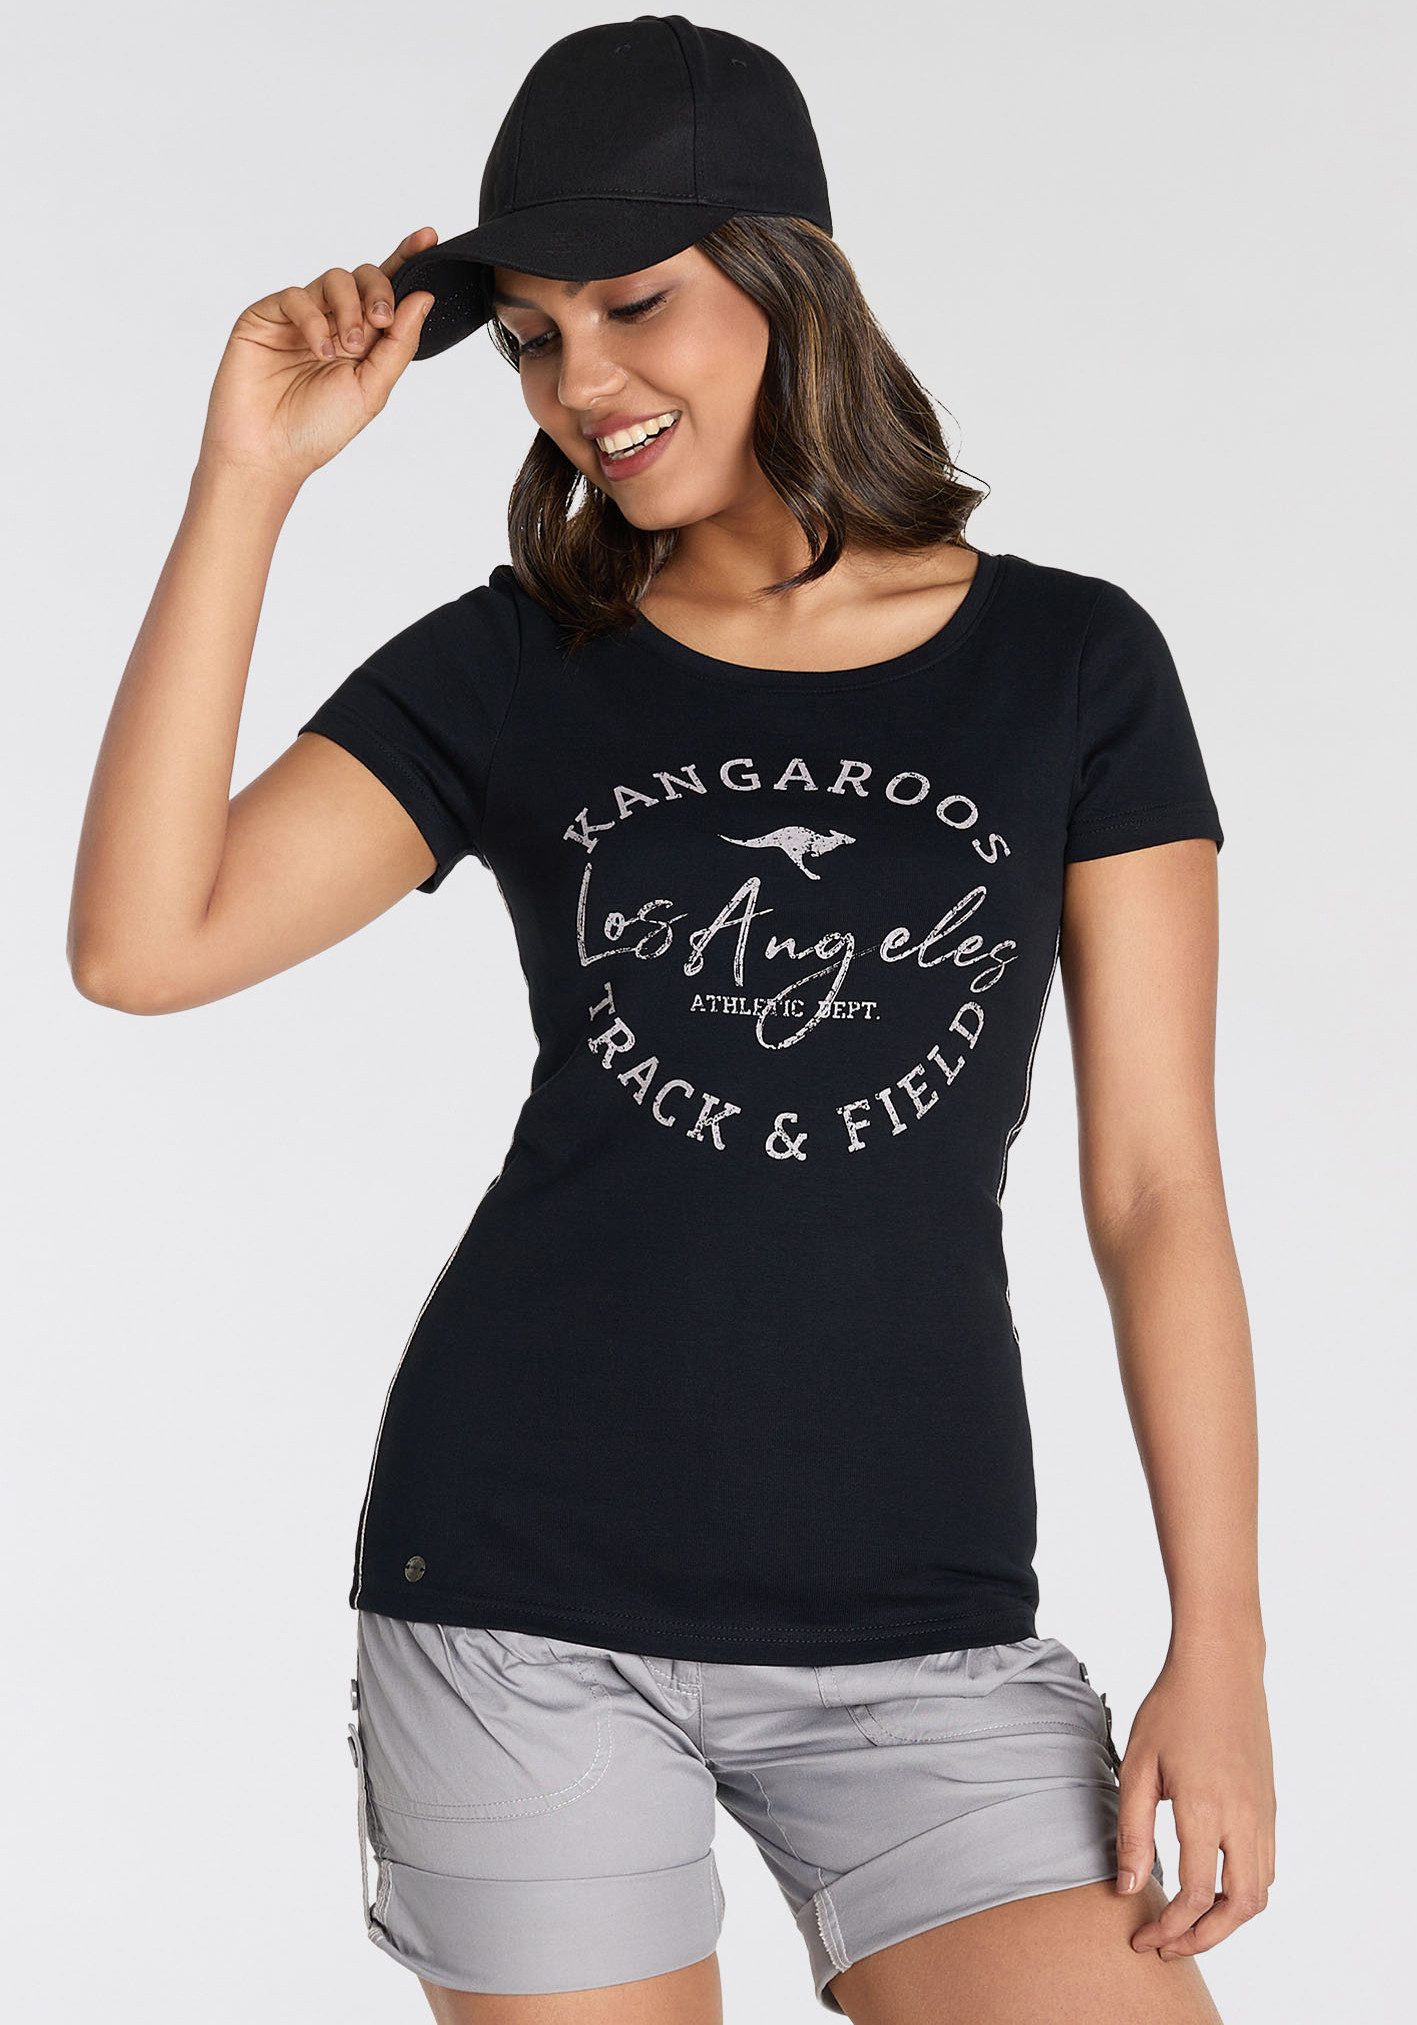 KangaROOS Print-Shirt im American-Look - NEUE FARBEN